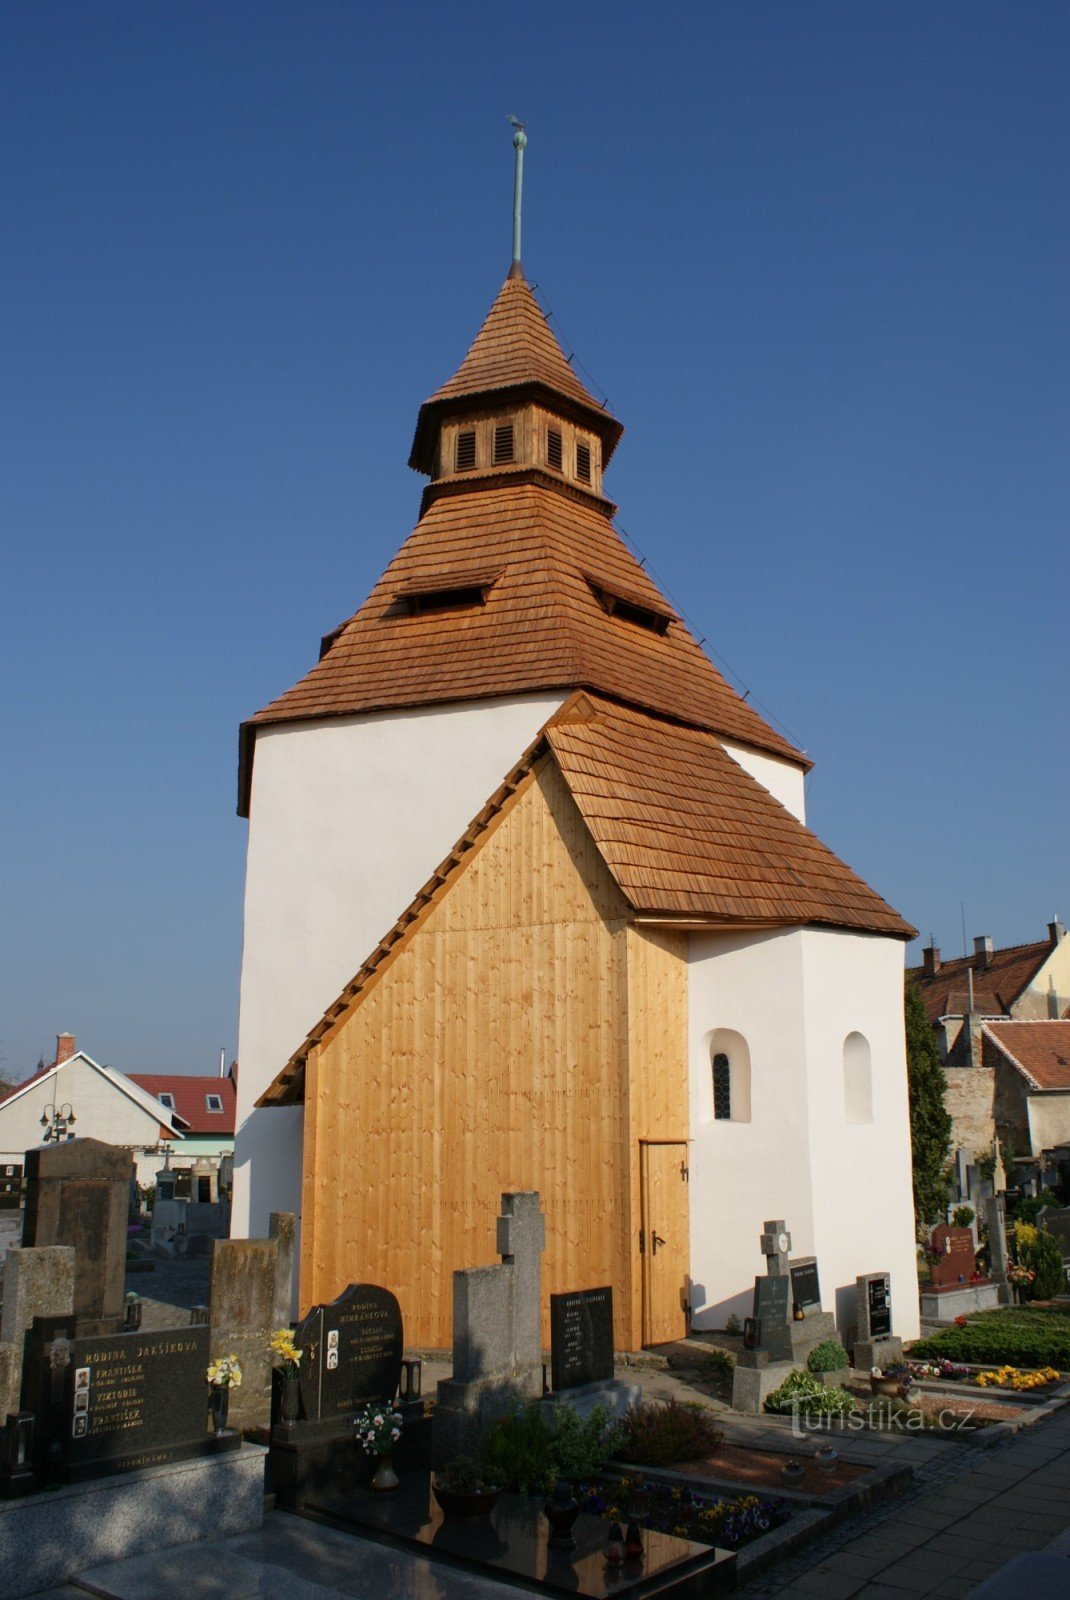 Staré Město Uh. Hradiště közelében – temetőterület a Szent István-templommal. Mihály arkangyal